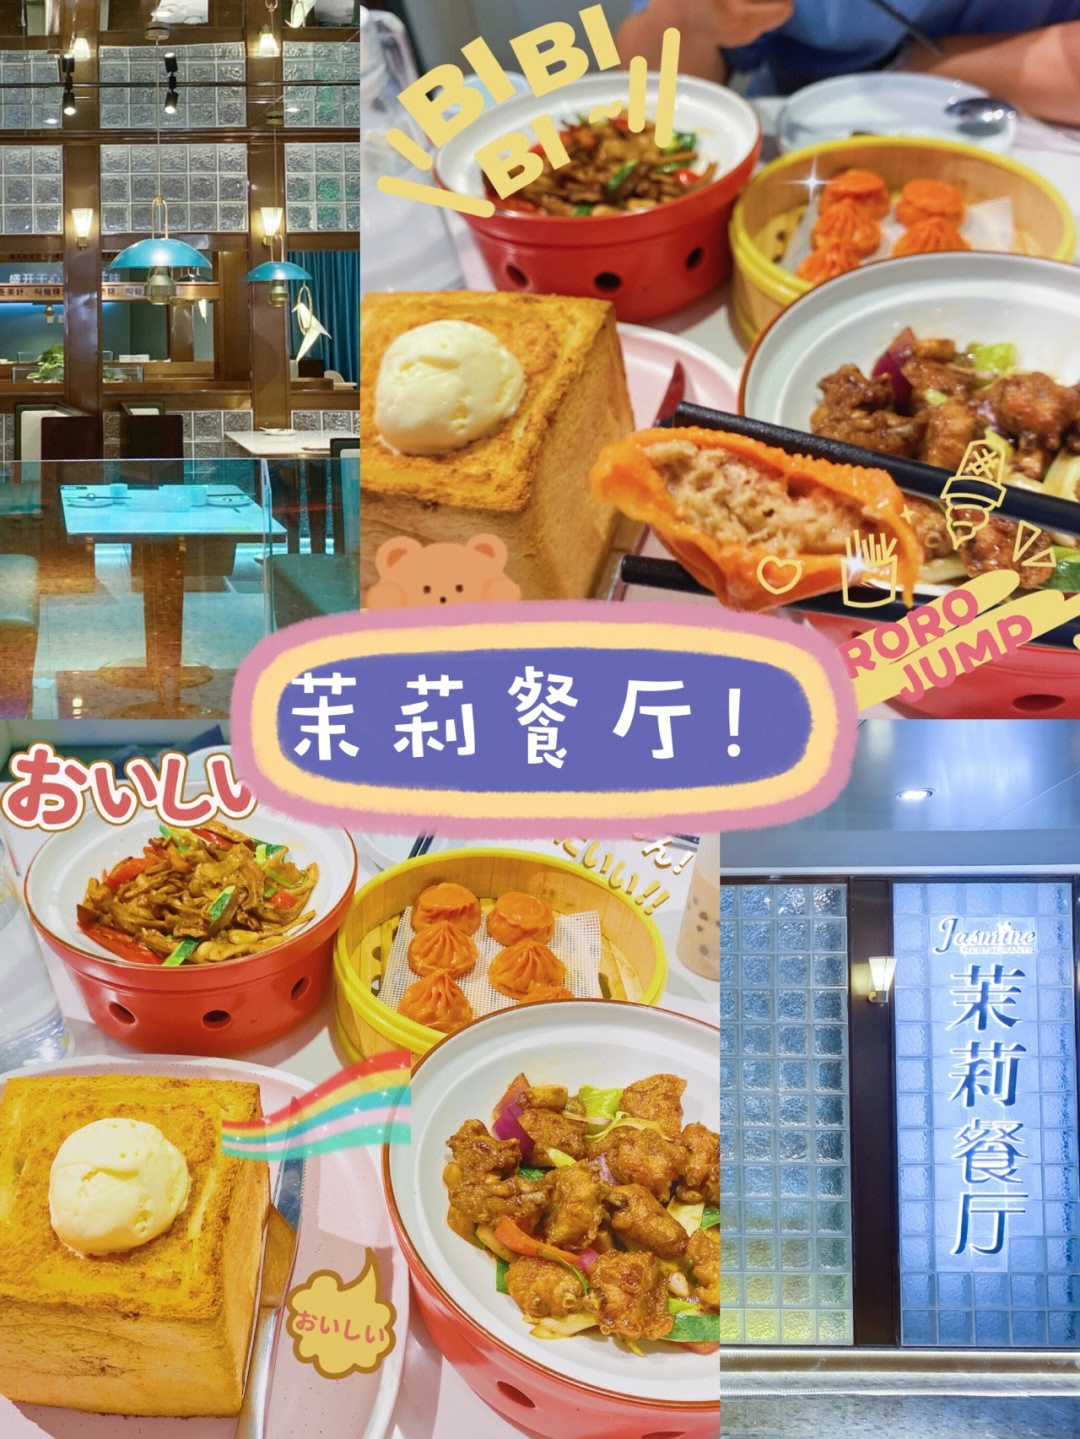 潍坊也有茉莉餐厅啦打卡网红美食餐厅